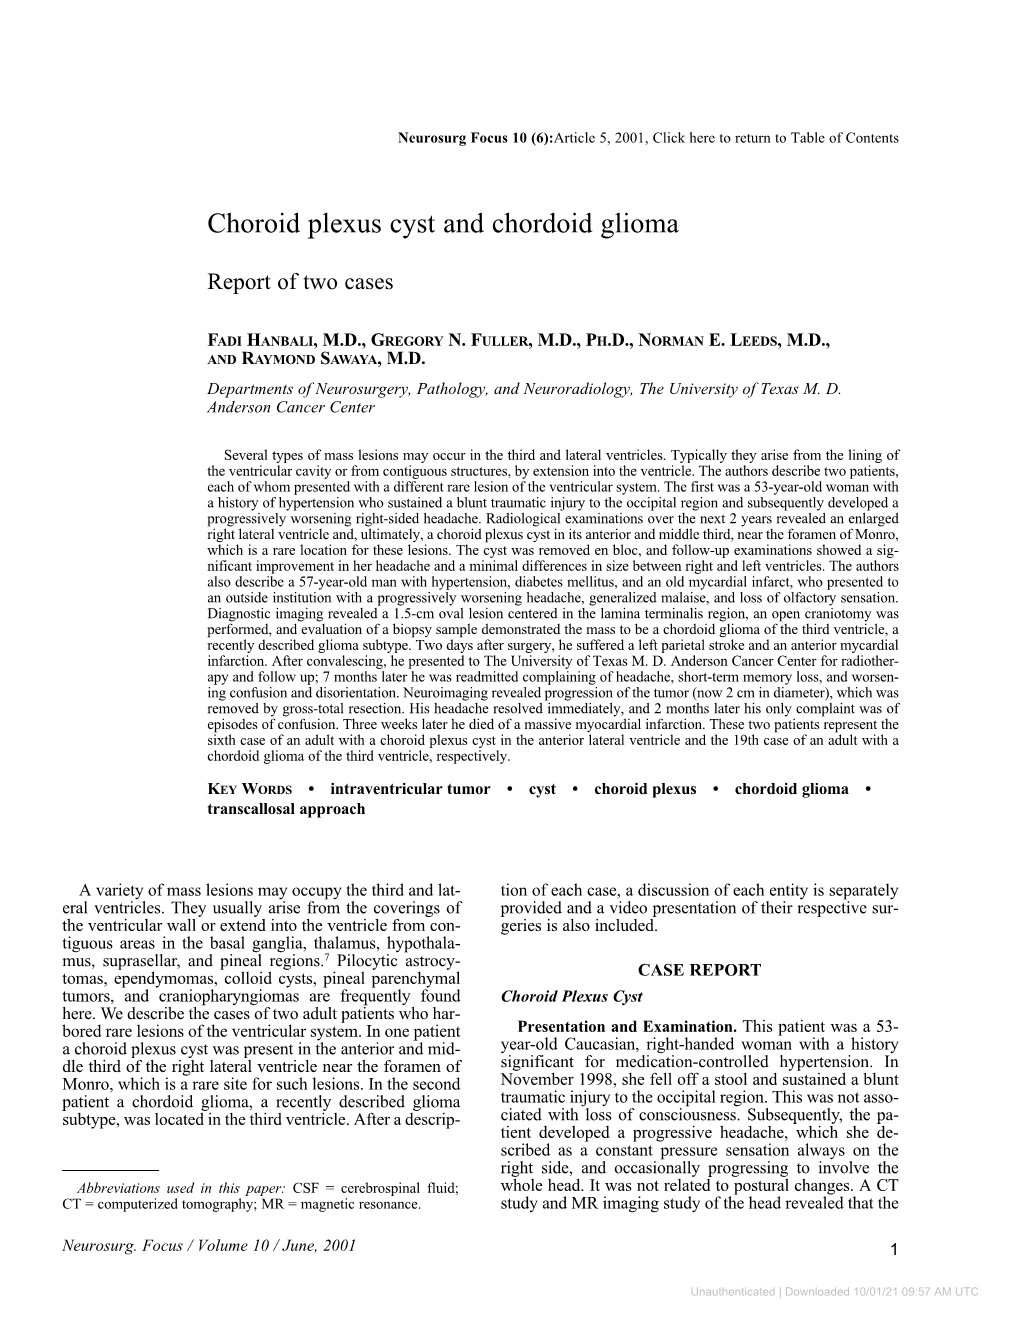 Choroid Plexus Cyst and Chordoid Glioma